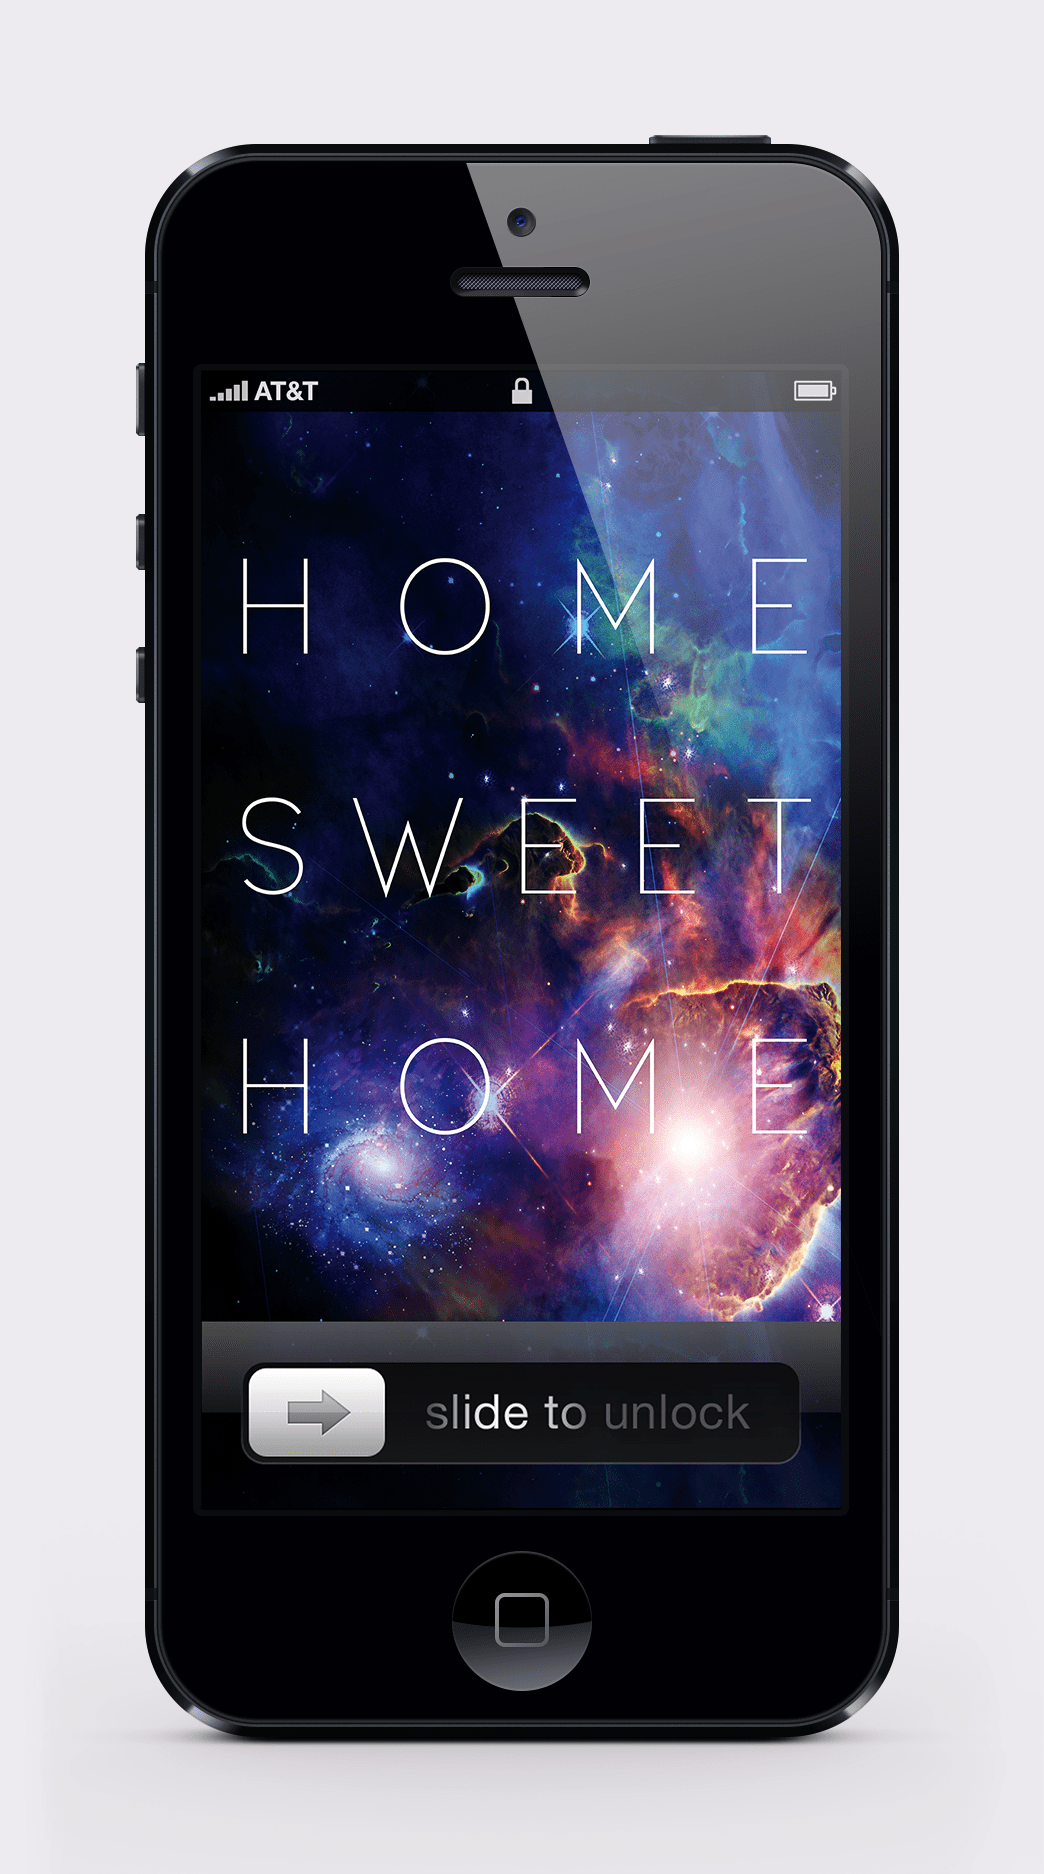 iphone iphone 5 wallpaper retina Retina Display home sweet home sweet sweet home